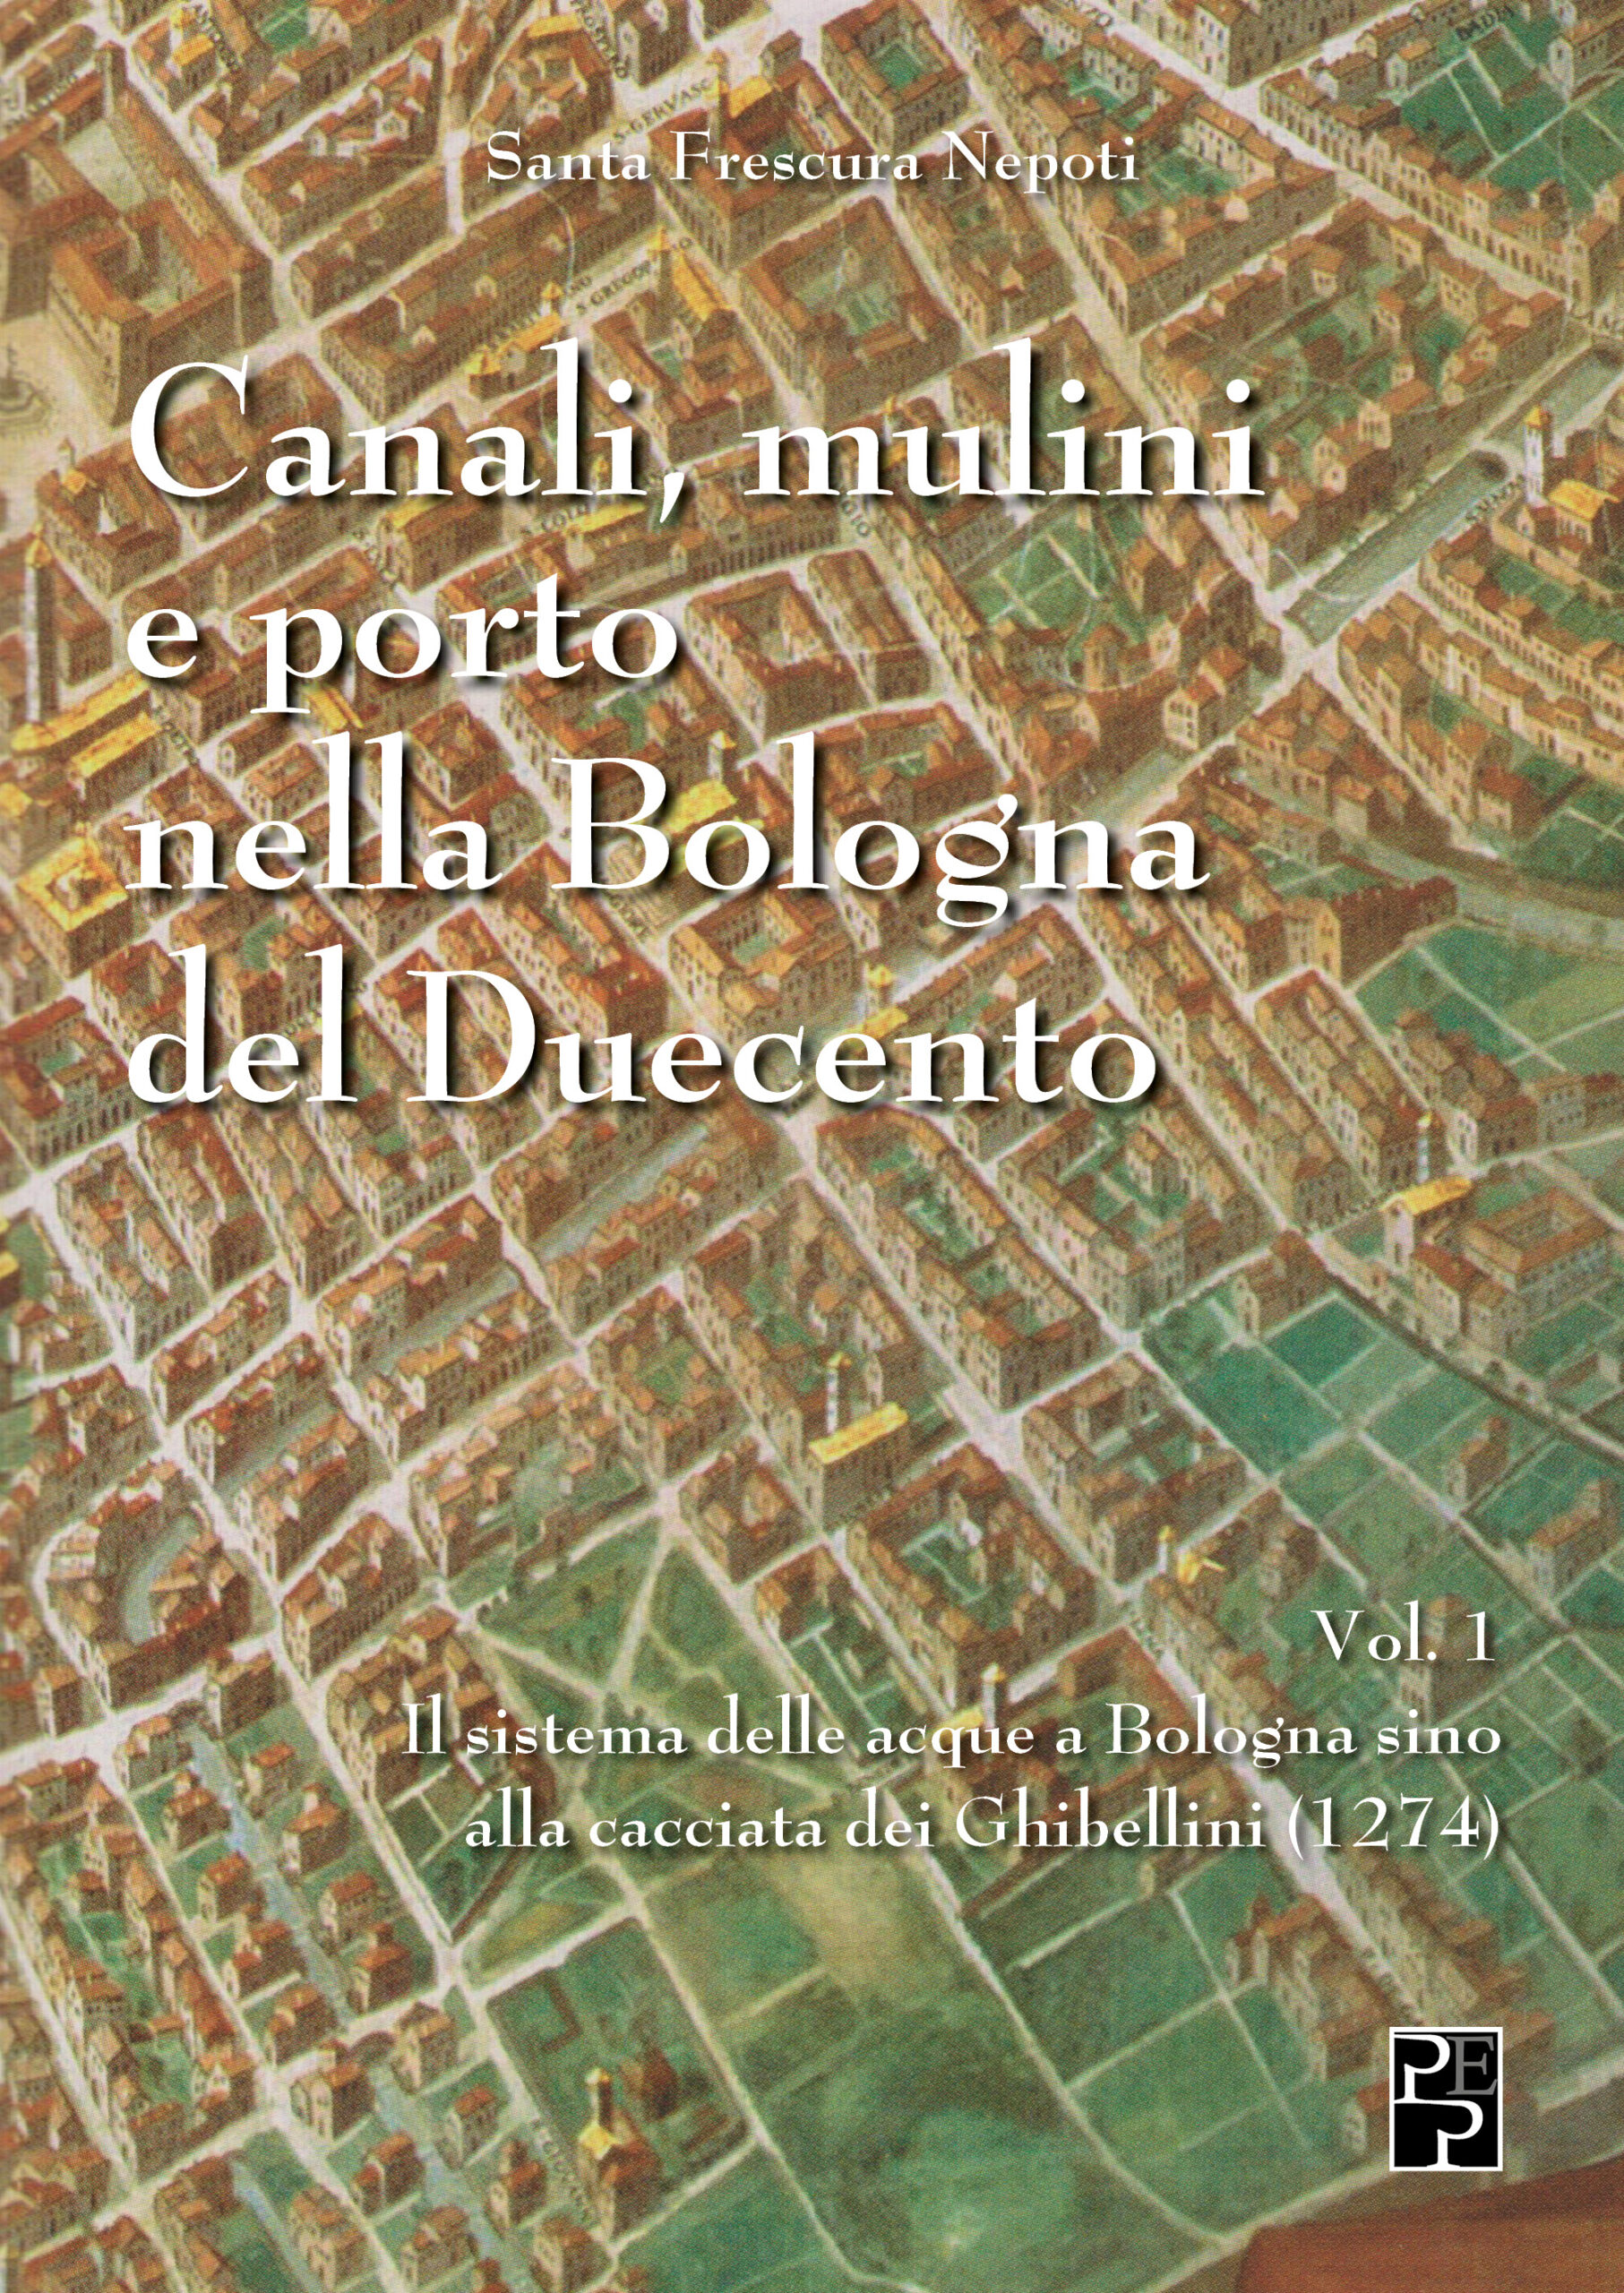 vol 1_canali e Mulini_cover